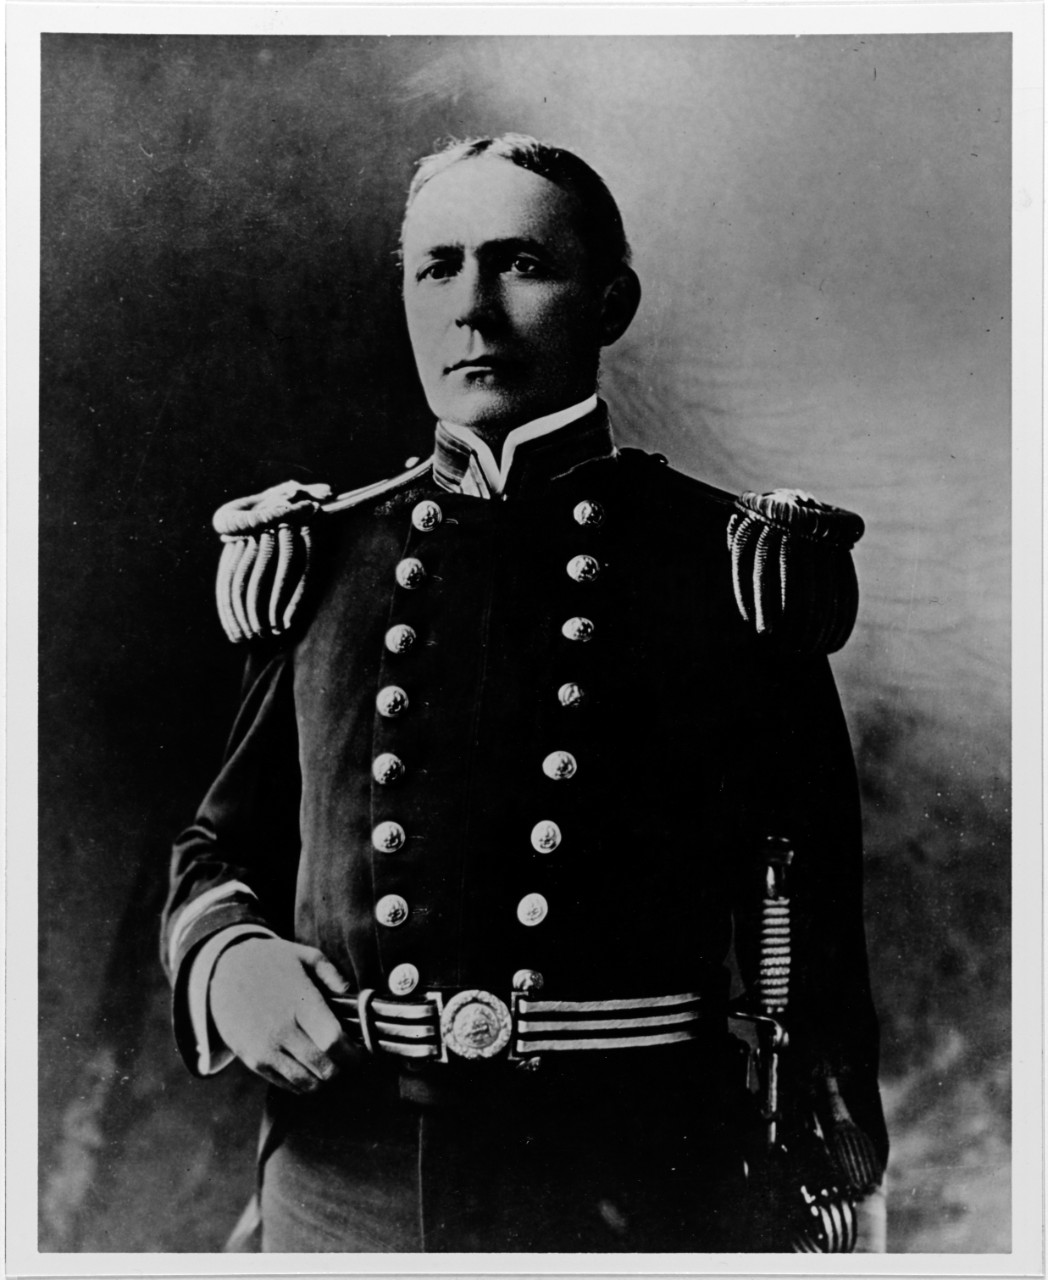 Captain Richard C. Hollyday, Captain, USN